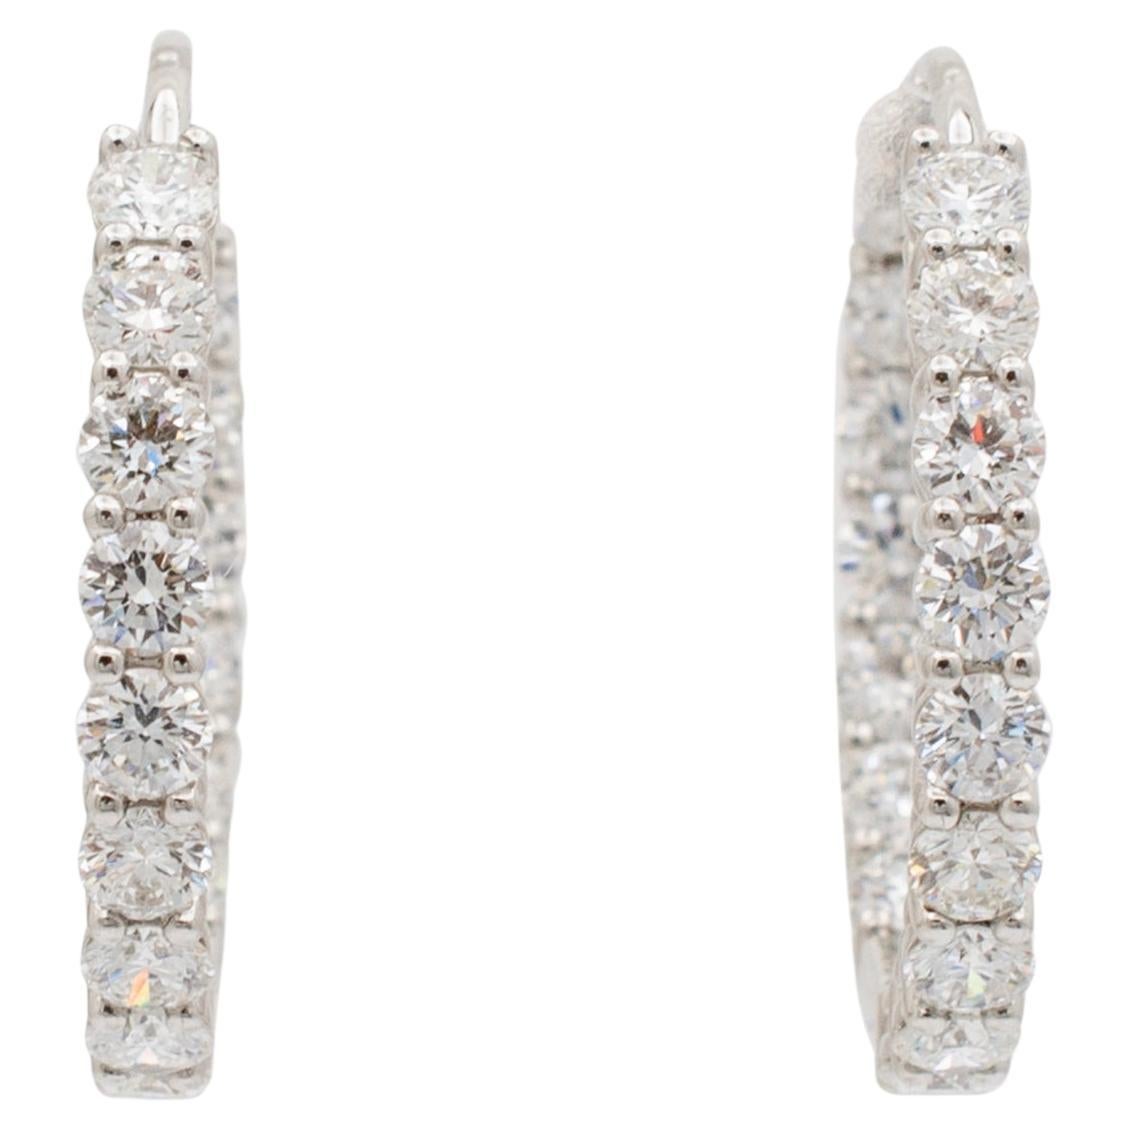 Brand: Tiffany & Co.

Gender: Ladies

Metal Type: Platinum 

Diameter: 23.75 mm 

Weight: 8.64 grams

One pair of ladies 950 platinum diamond hoop earrings with 